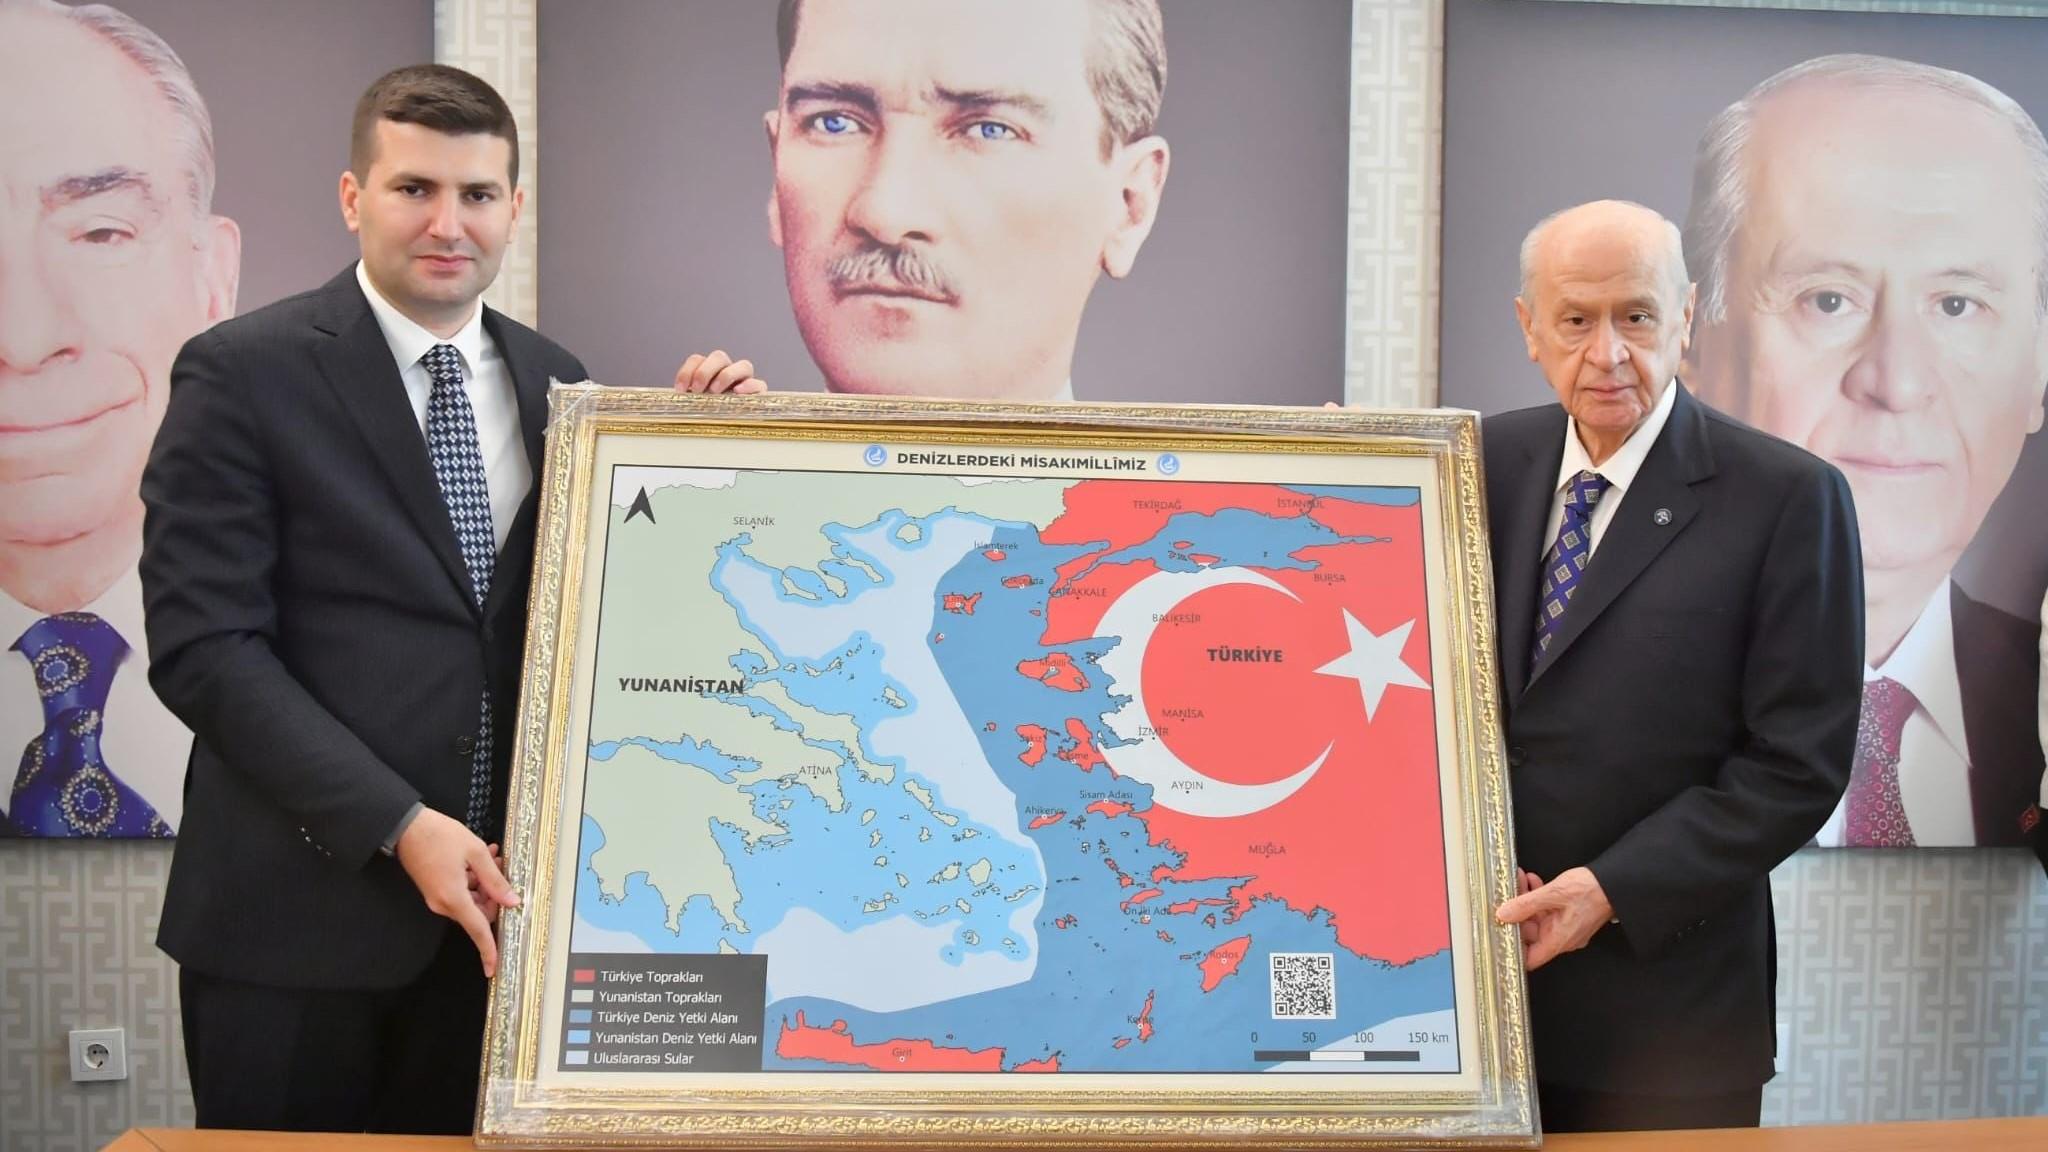 Μπαχτσελί: Παρουσίασε χάρτη του Αιγαίου με τα μισά νησιά και την Κρήτη να ανήκουν στην Τουρκία